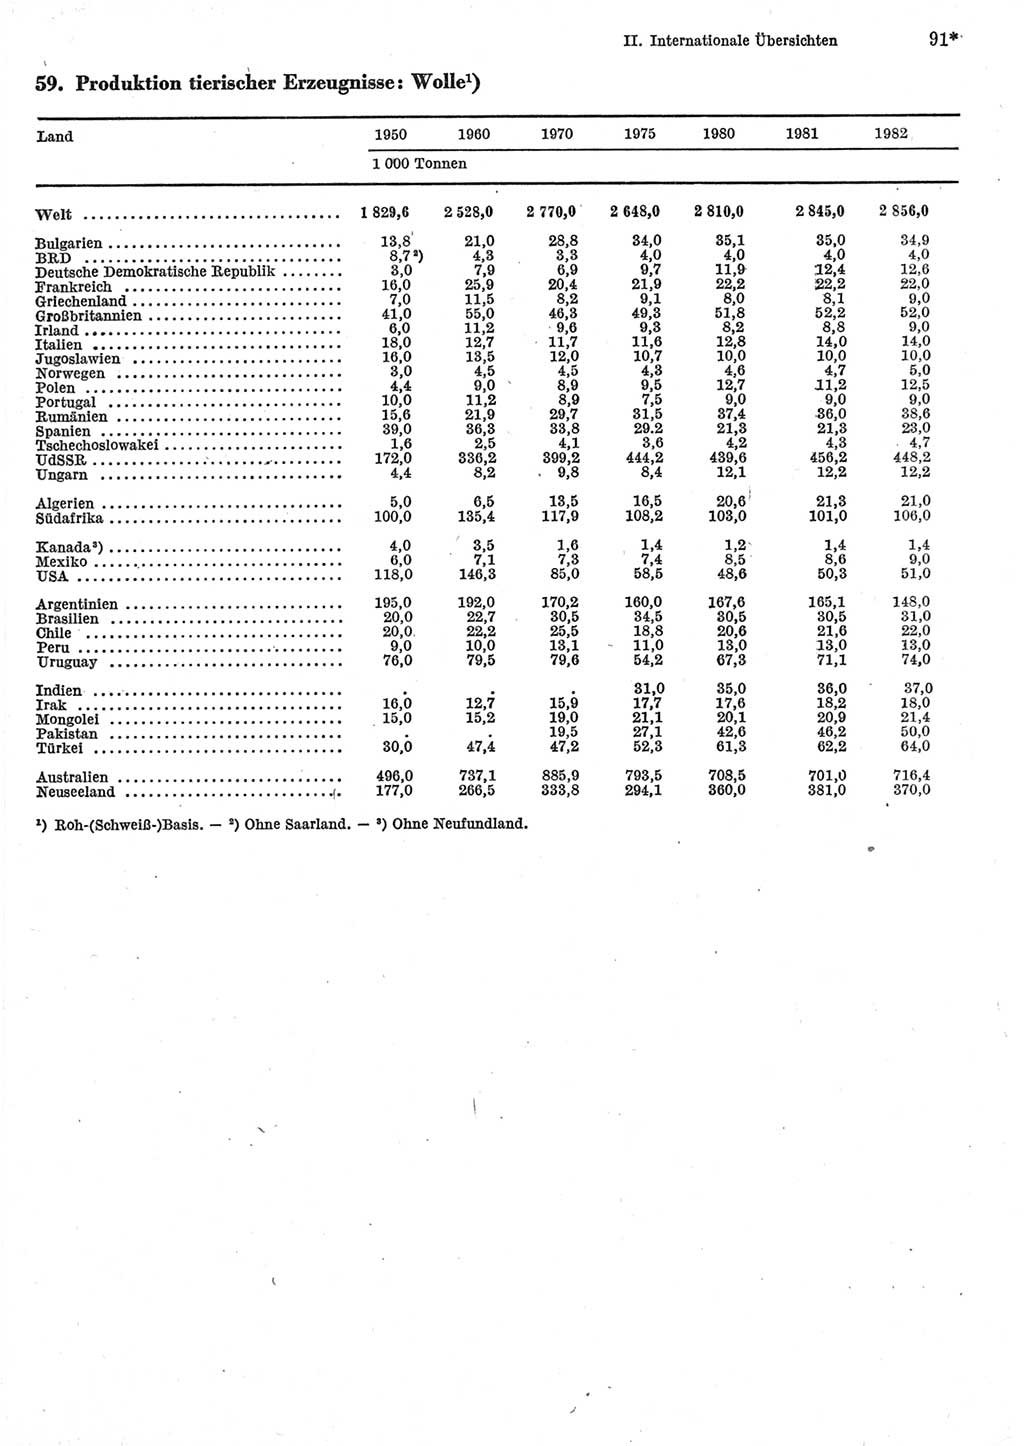 Statistisches Jahrbuch der Deutschen Demokratischen Republik (DDR) 1984, Seite 91 (Stat. Jb. DDR 1984, S. 91)